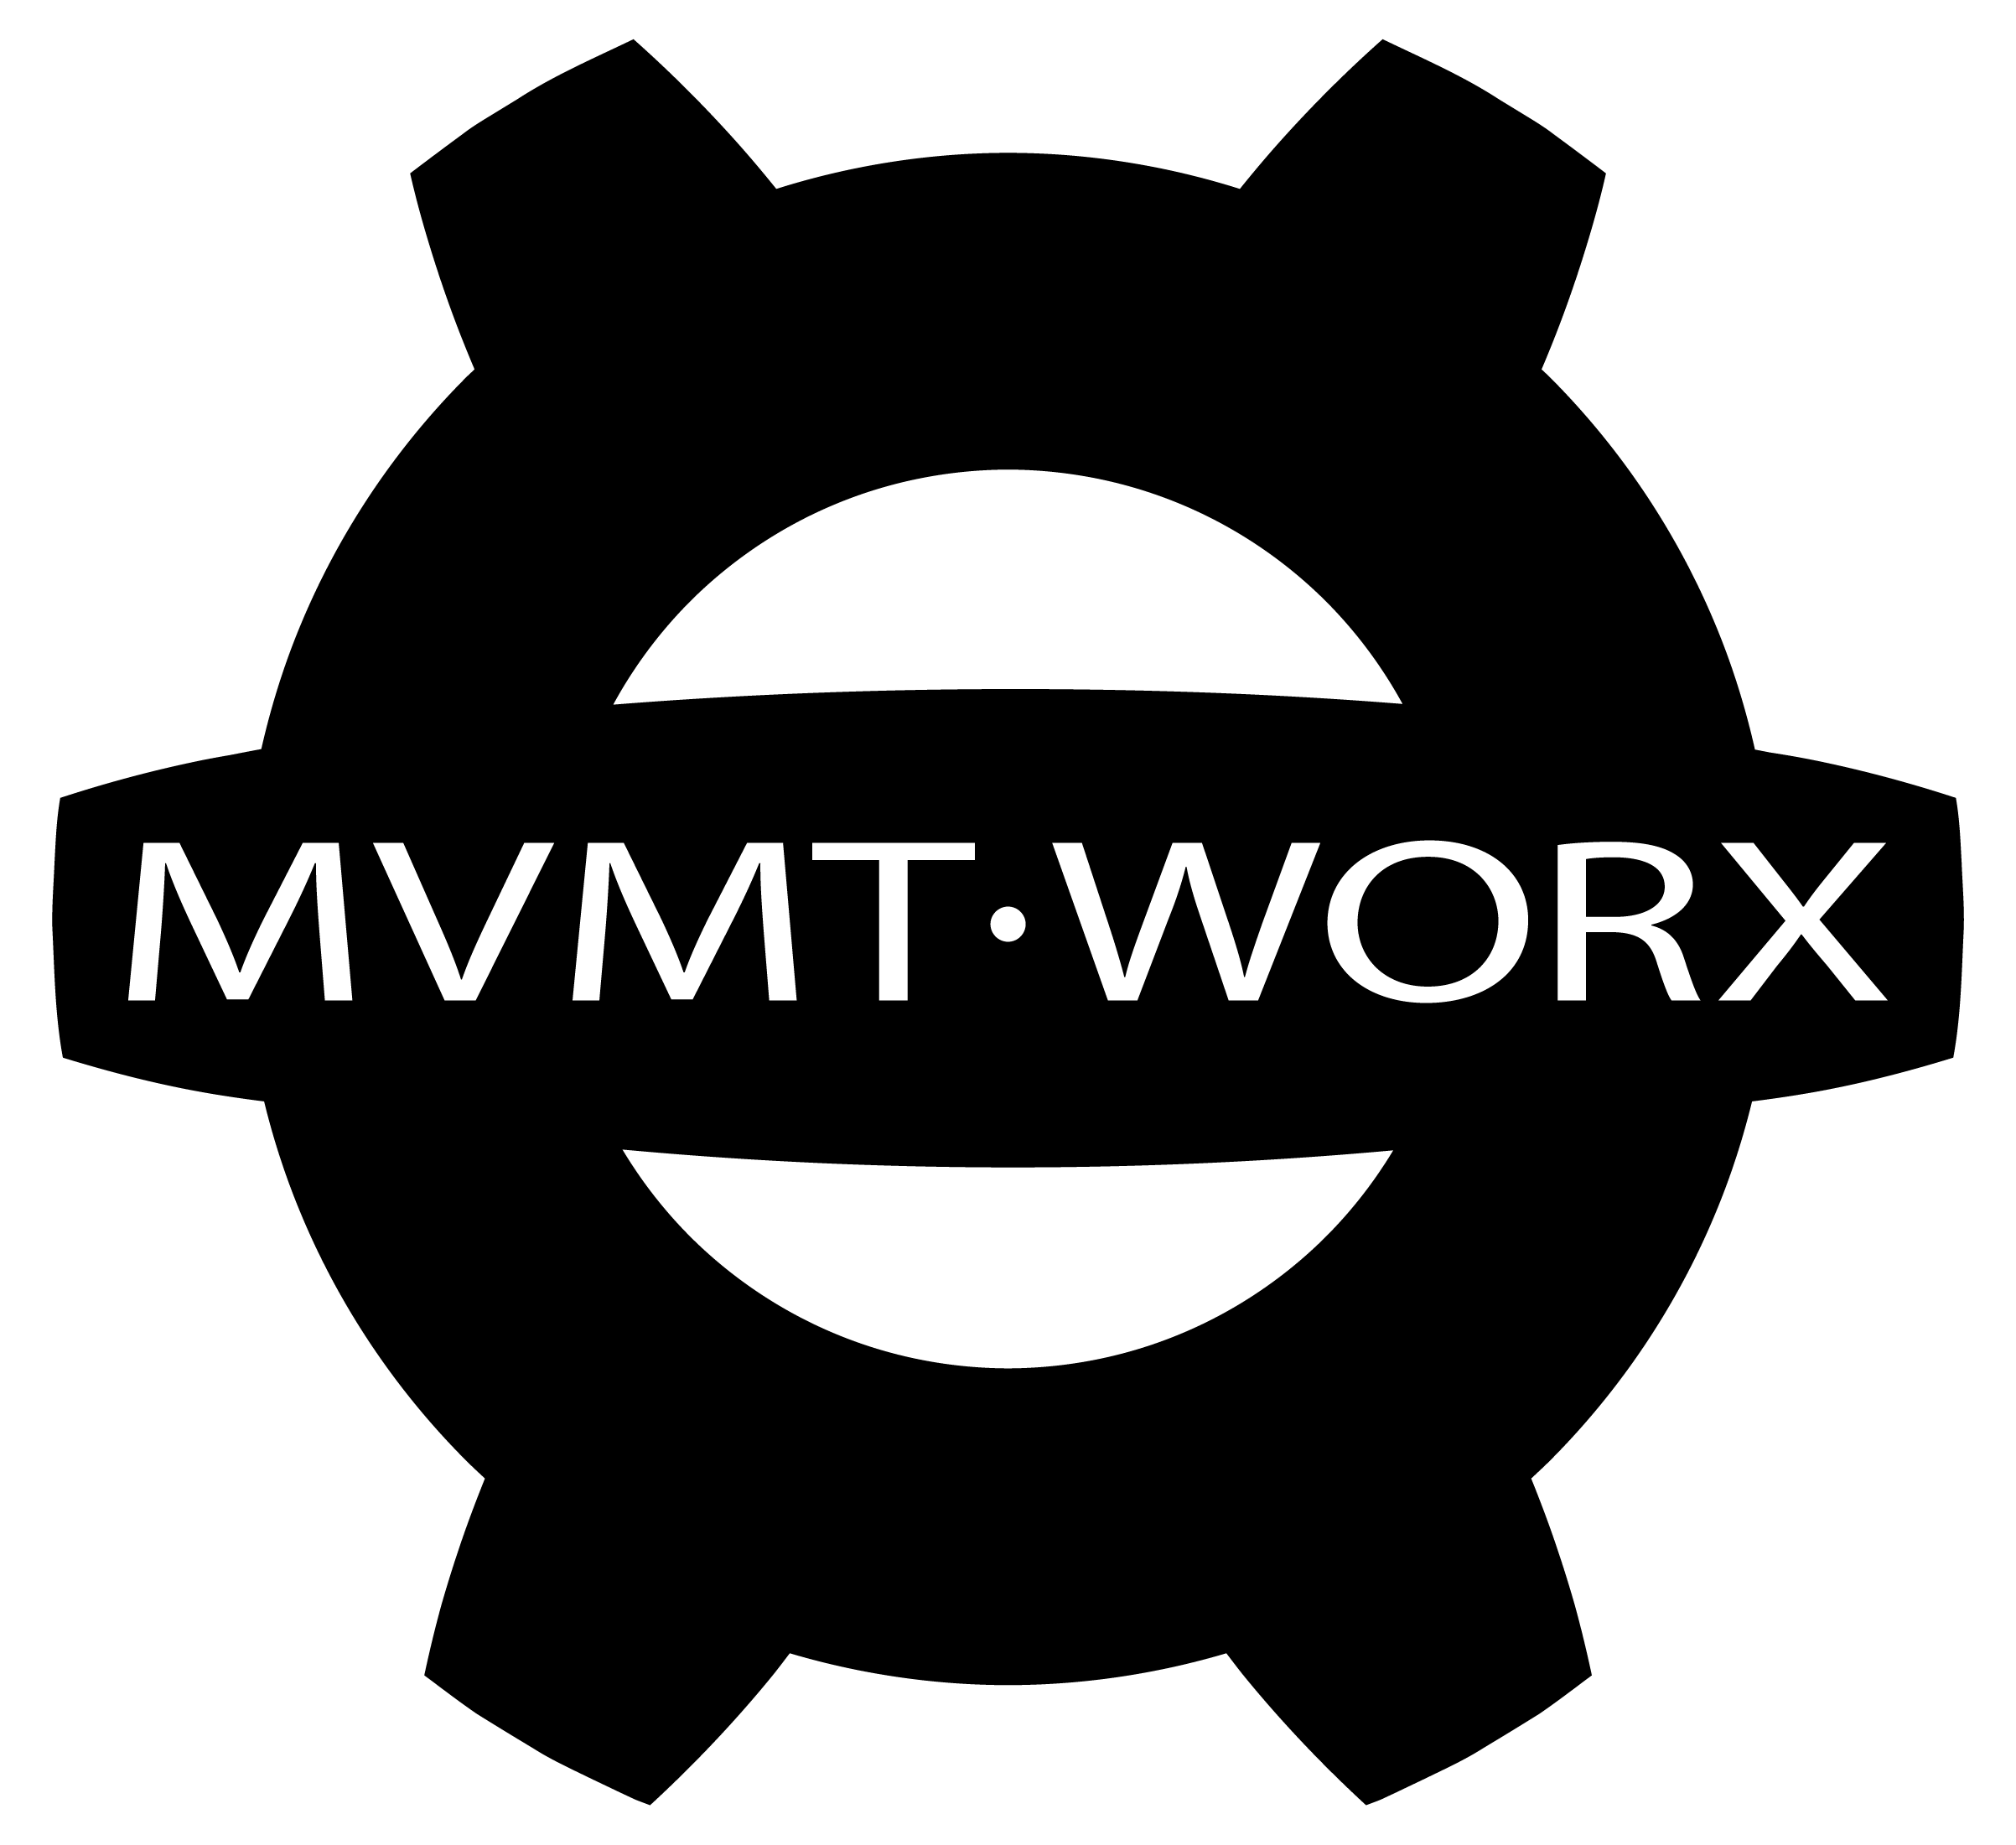 MVMT WORX